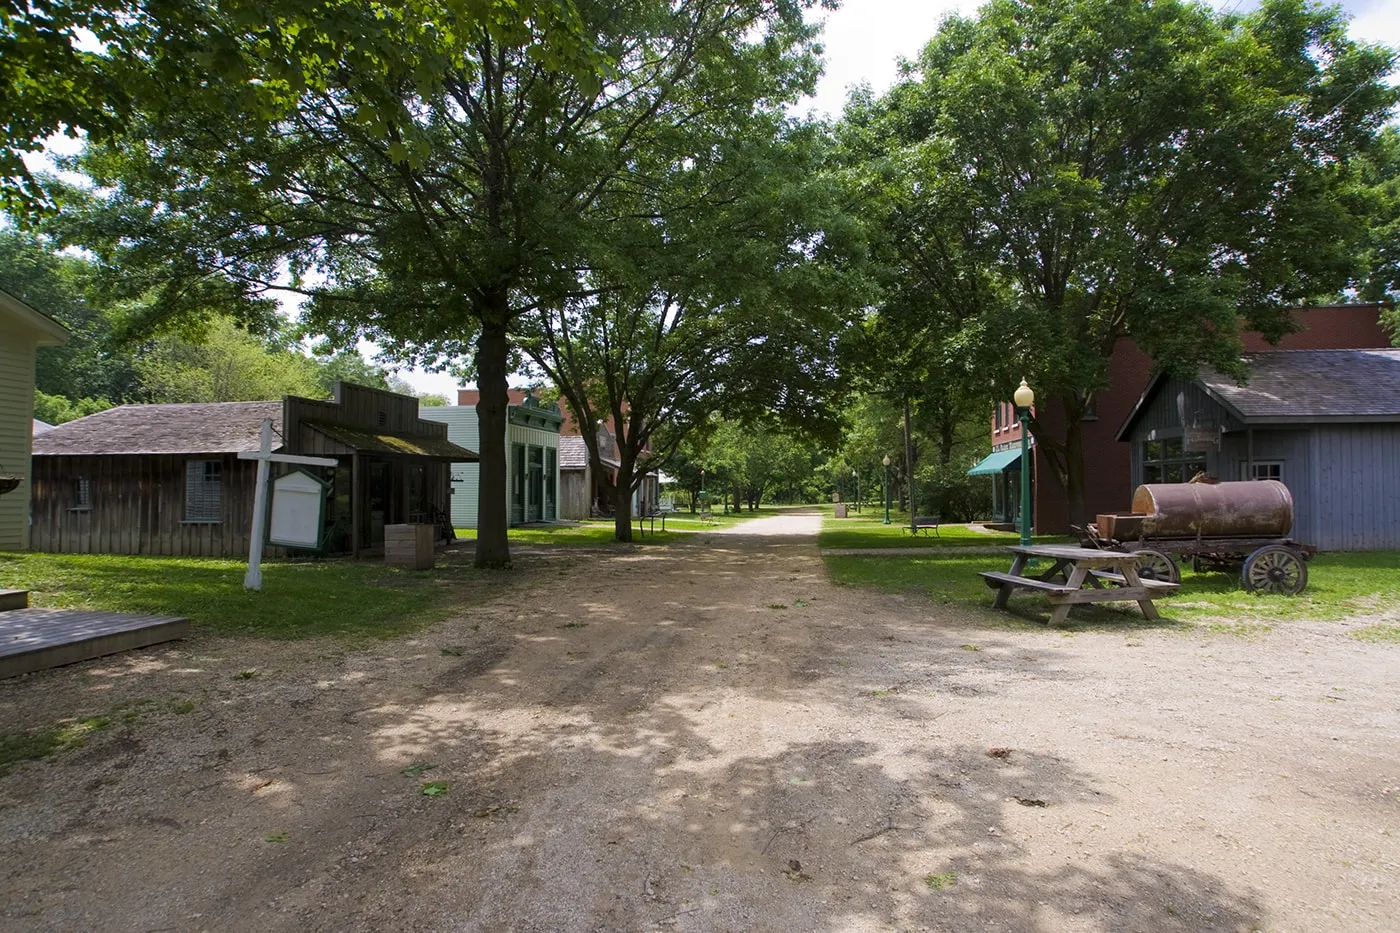 Midway Village in Rockford, Illinois